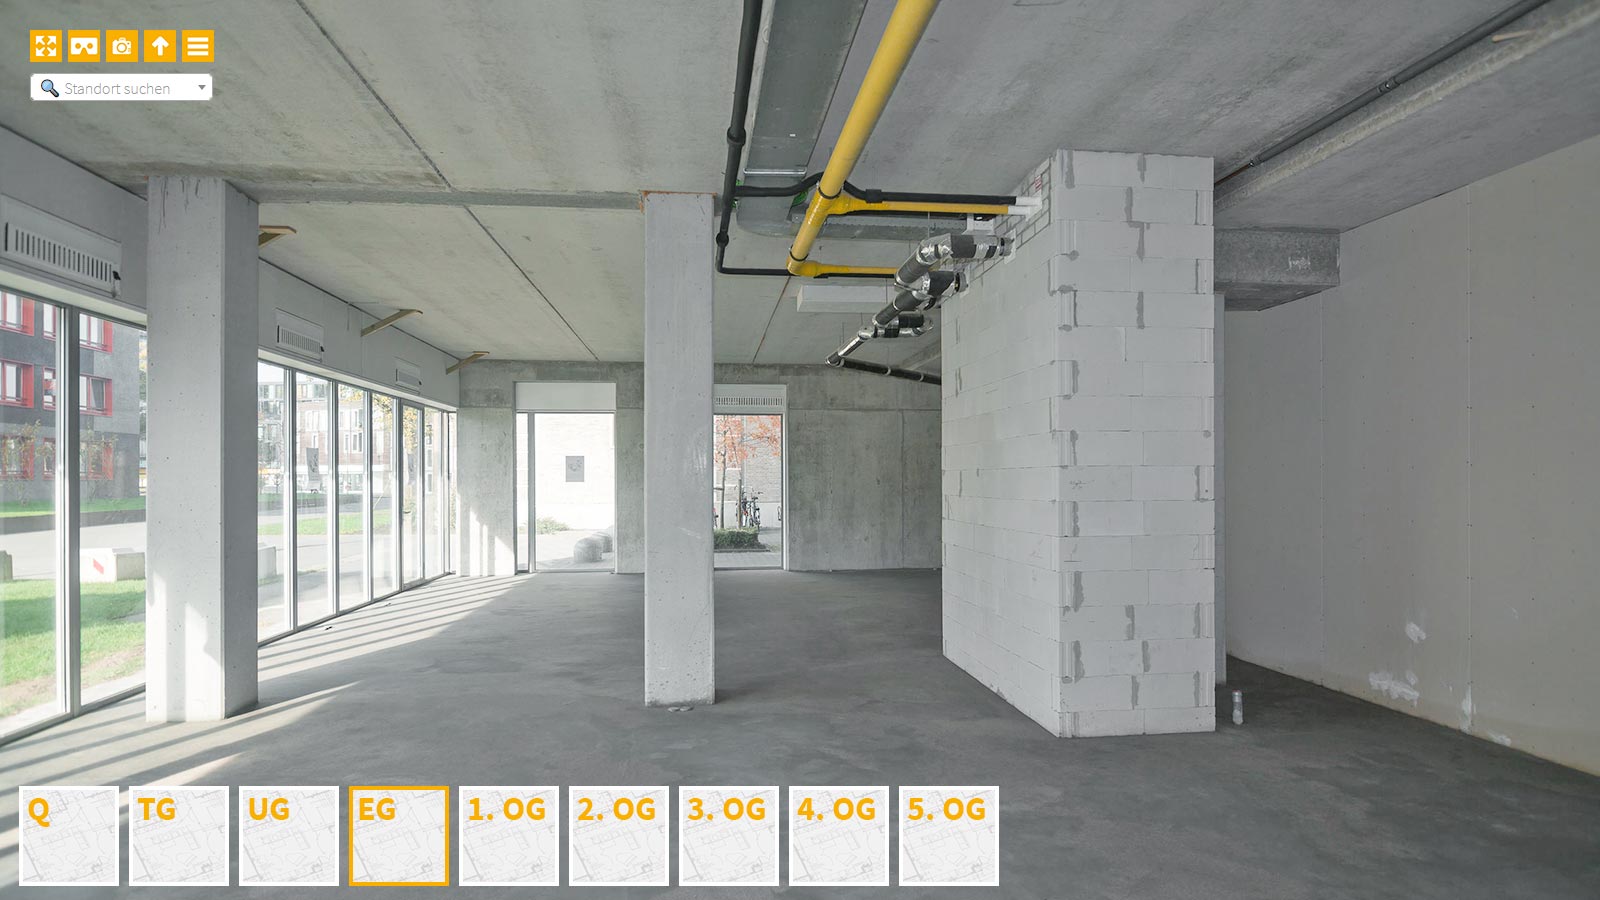 Baudokumentation 360 Grad bei gestörten Projekten in 


	


	


	


	


	


	


	


	


	


	Halle (Saale)









, Bilddokumentation als virtueller Rundgang